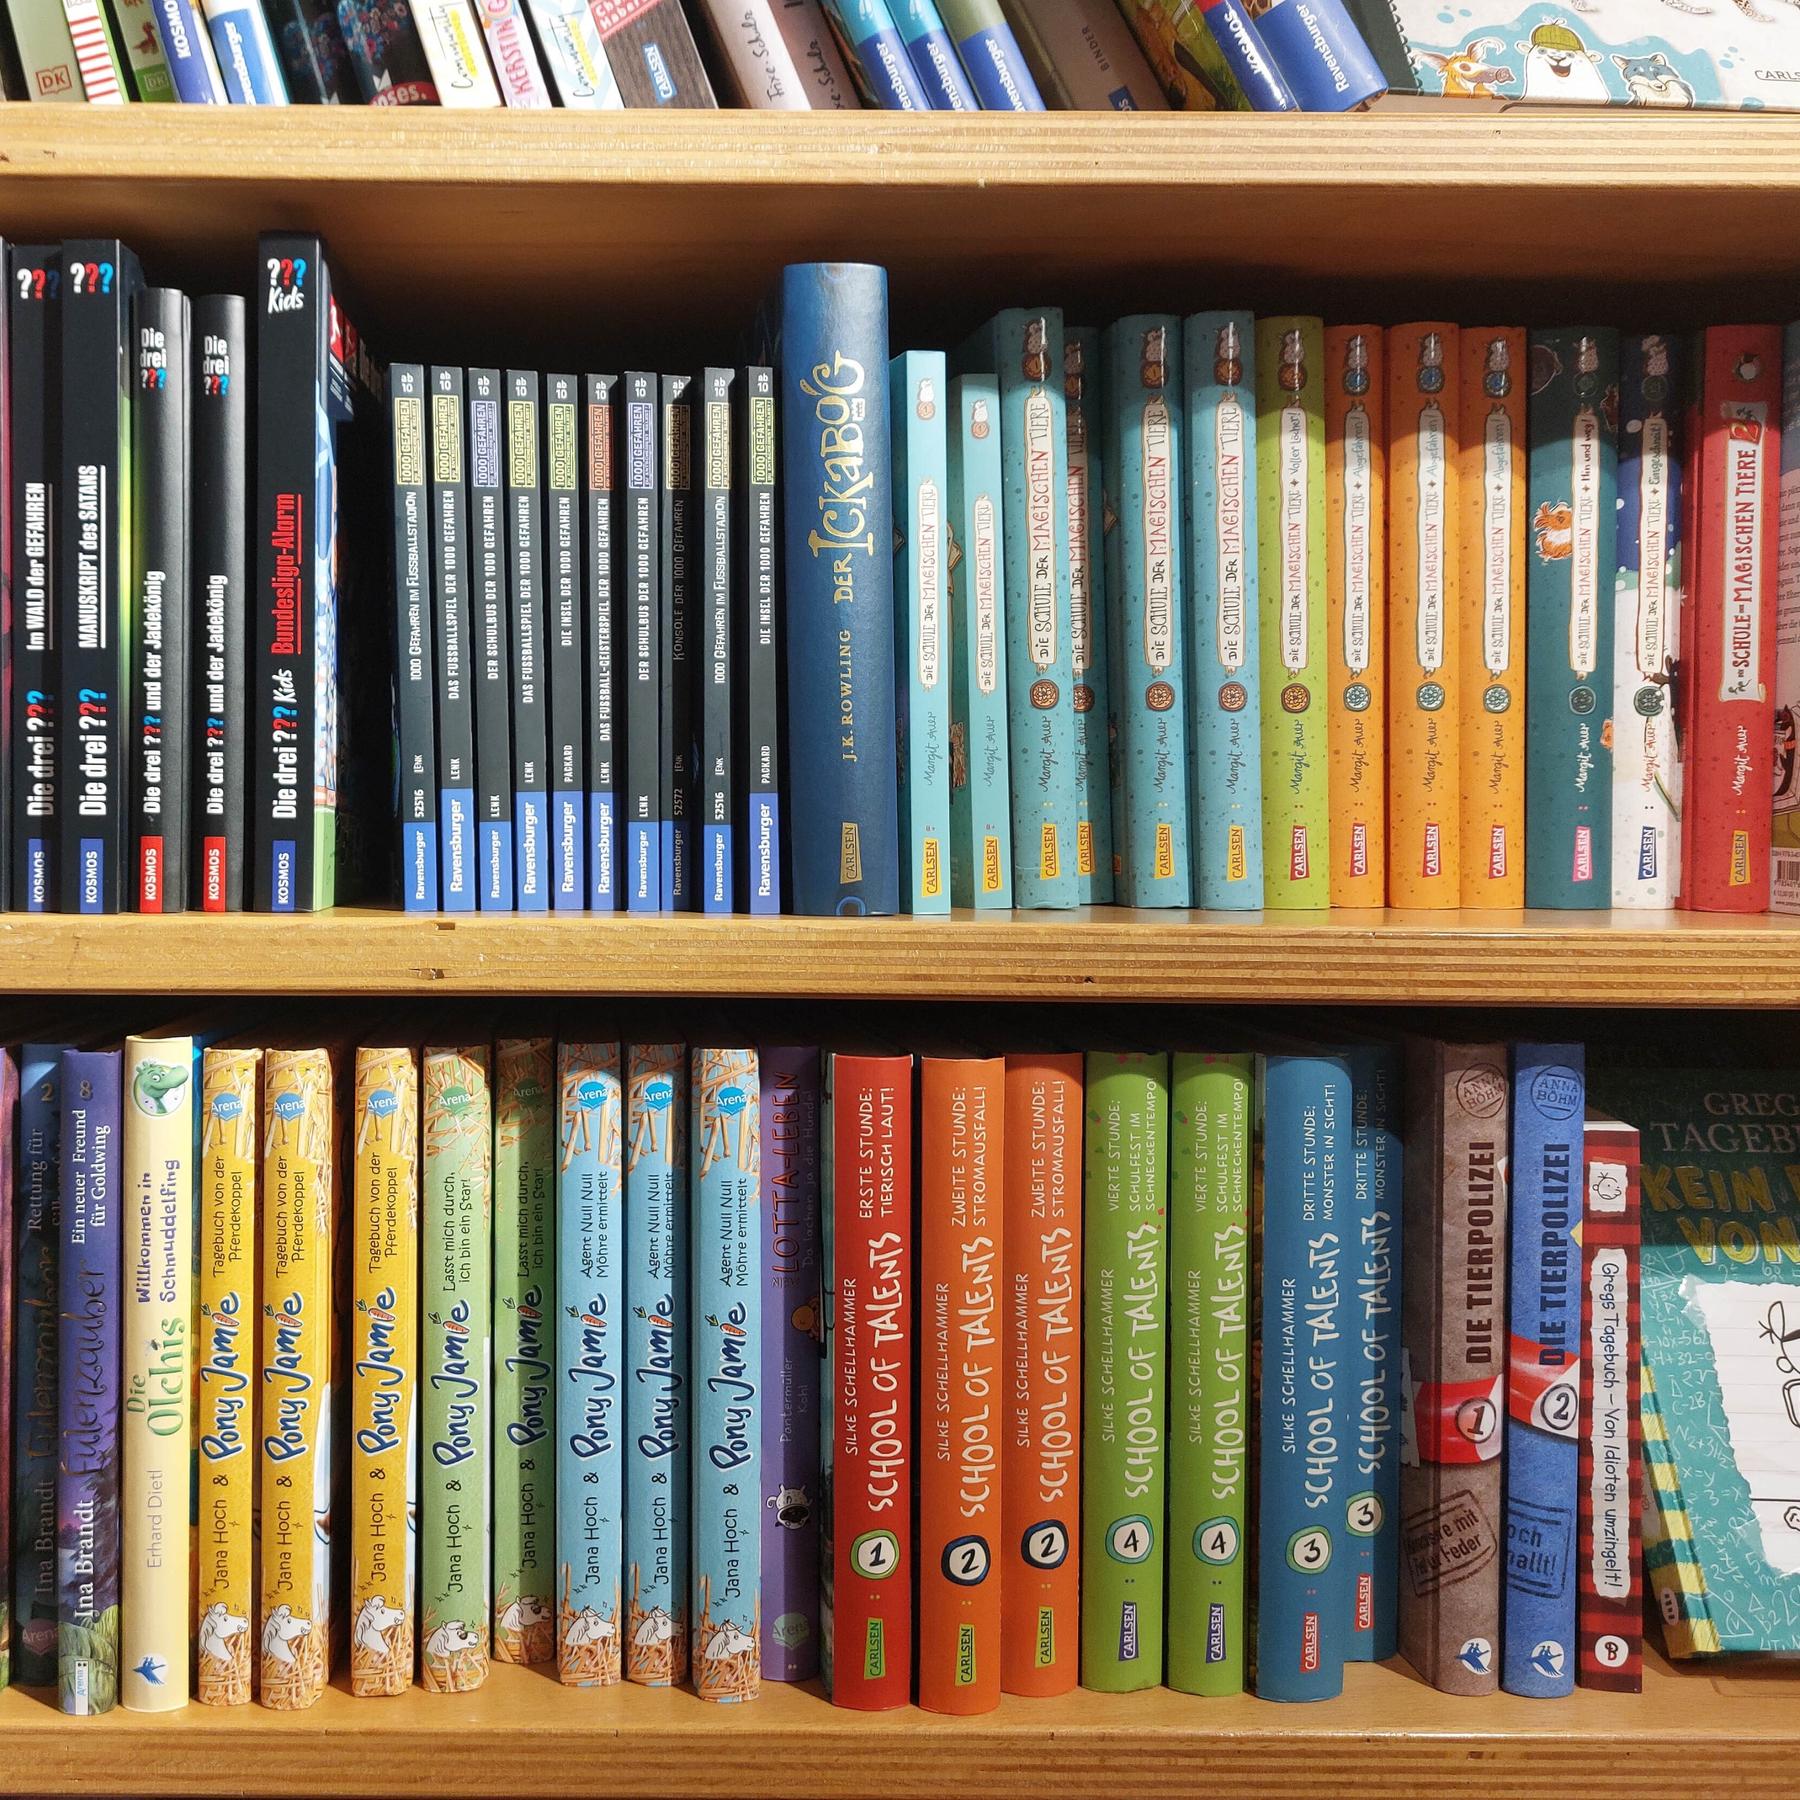 Kinderbuchexpertin Stemmann: ”Es gibt wirklich ein enorm großes Angebot an Kinderbüchern”